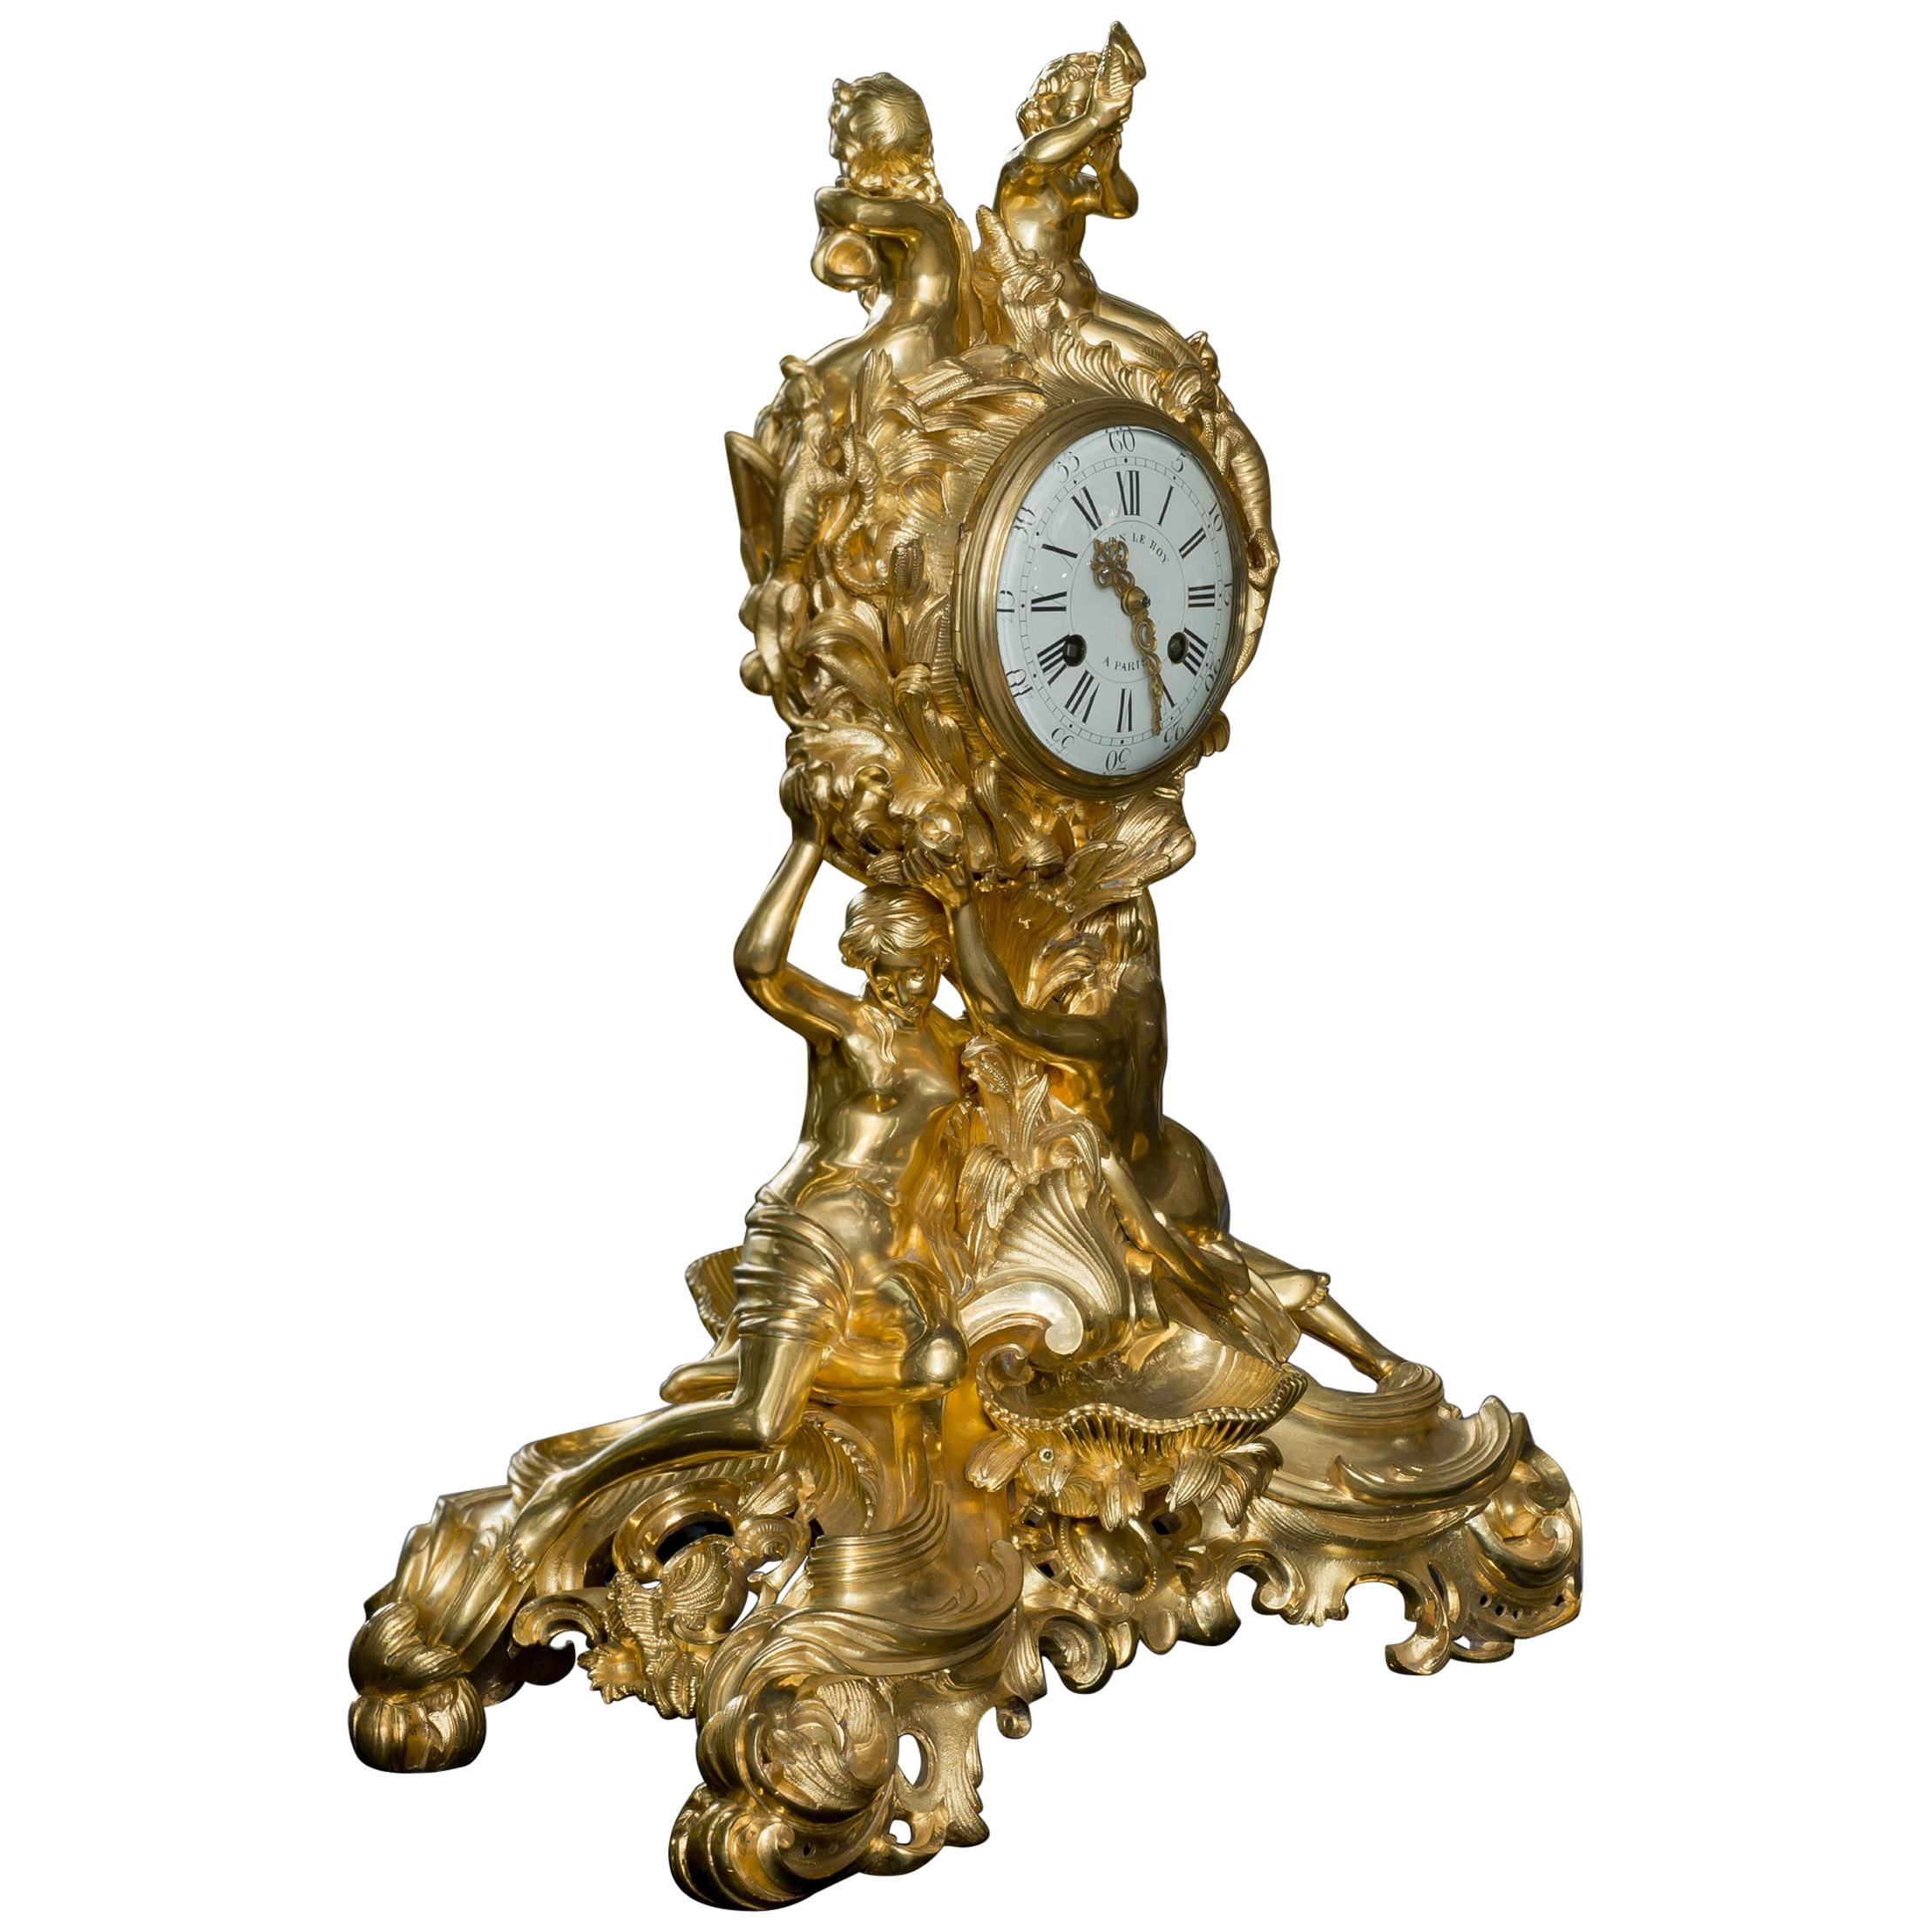 Napoléon III Gilt-Bronze Double-Faced Clock. French, c 1870